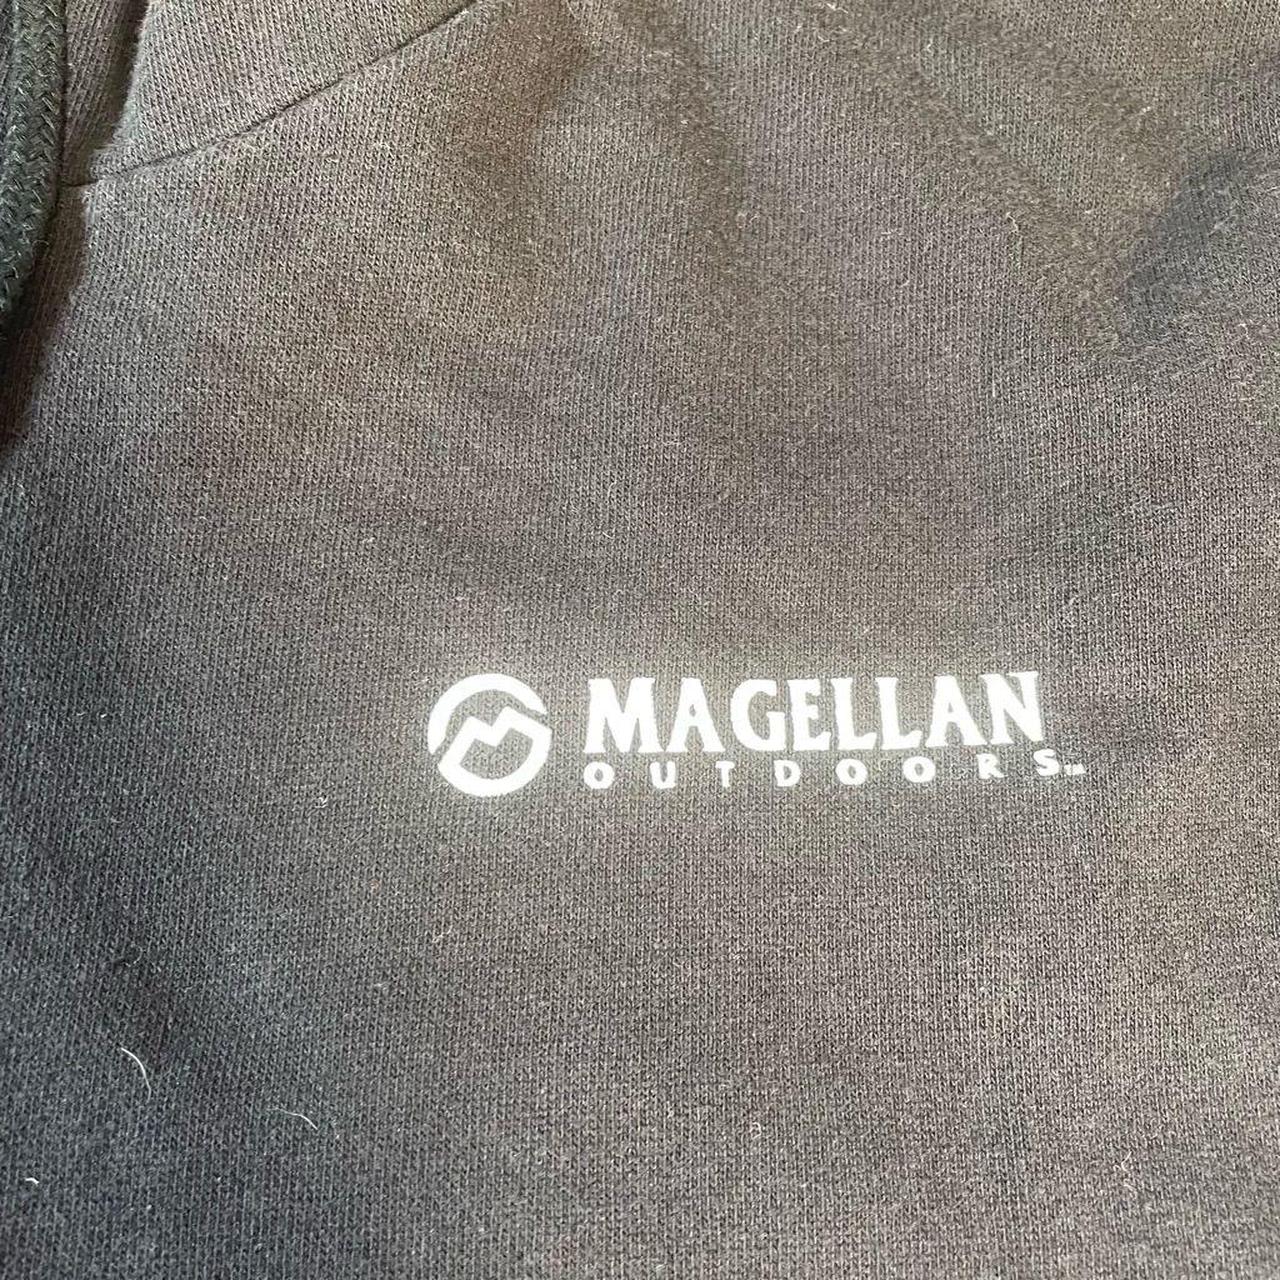 Magellan Outdoors hooded men's slider jacket for $19 - Clark Deals